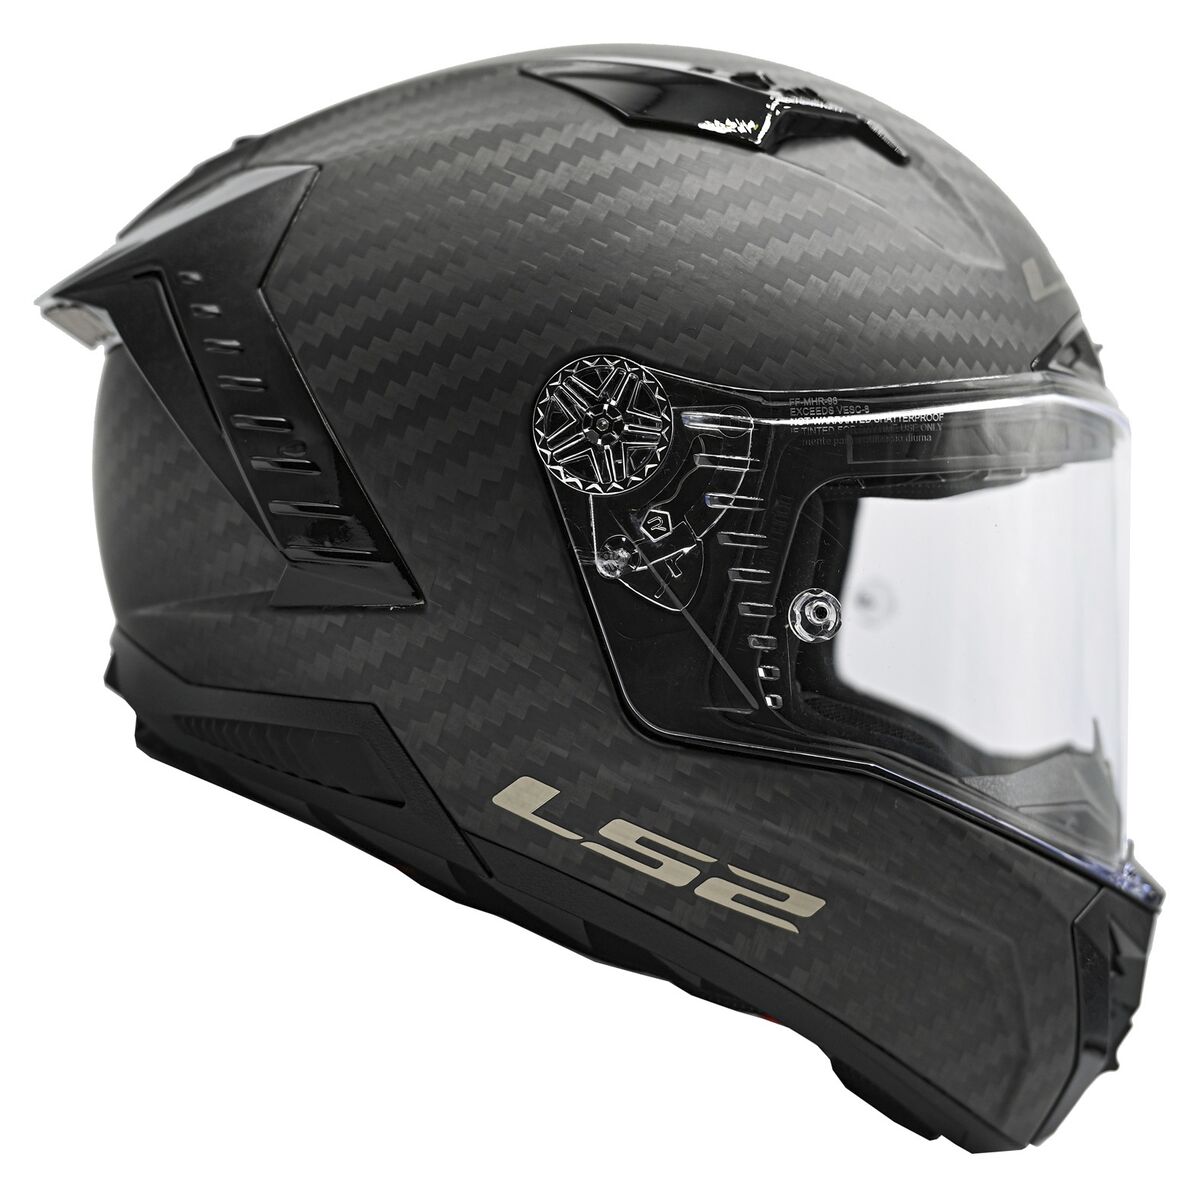 LS2: Bike helmet